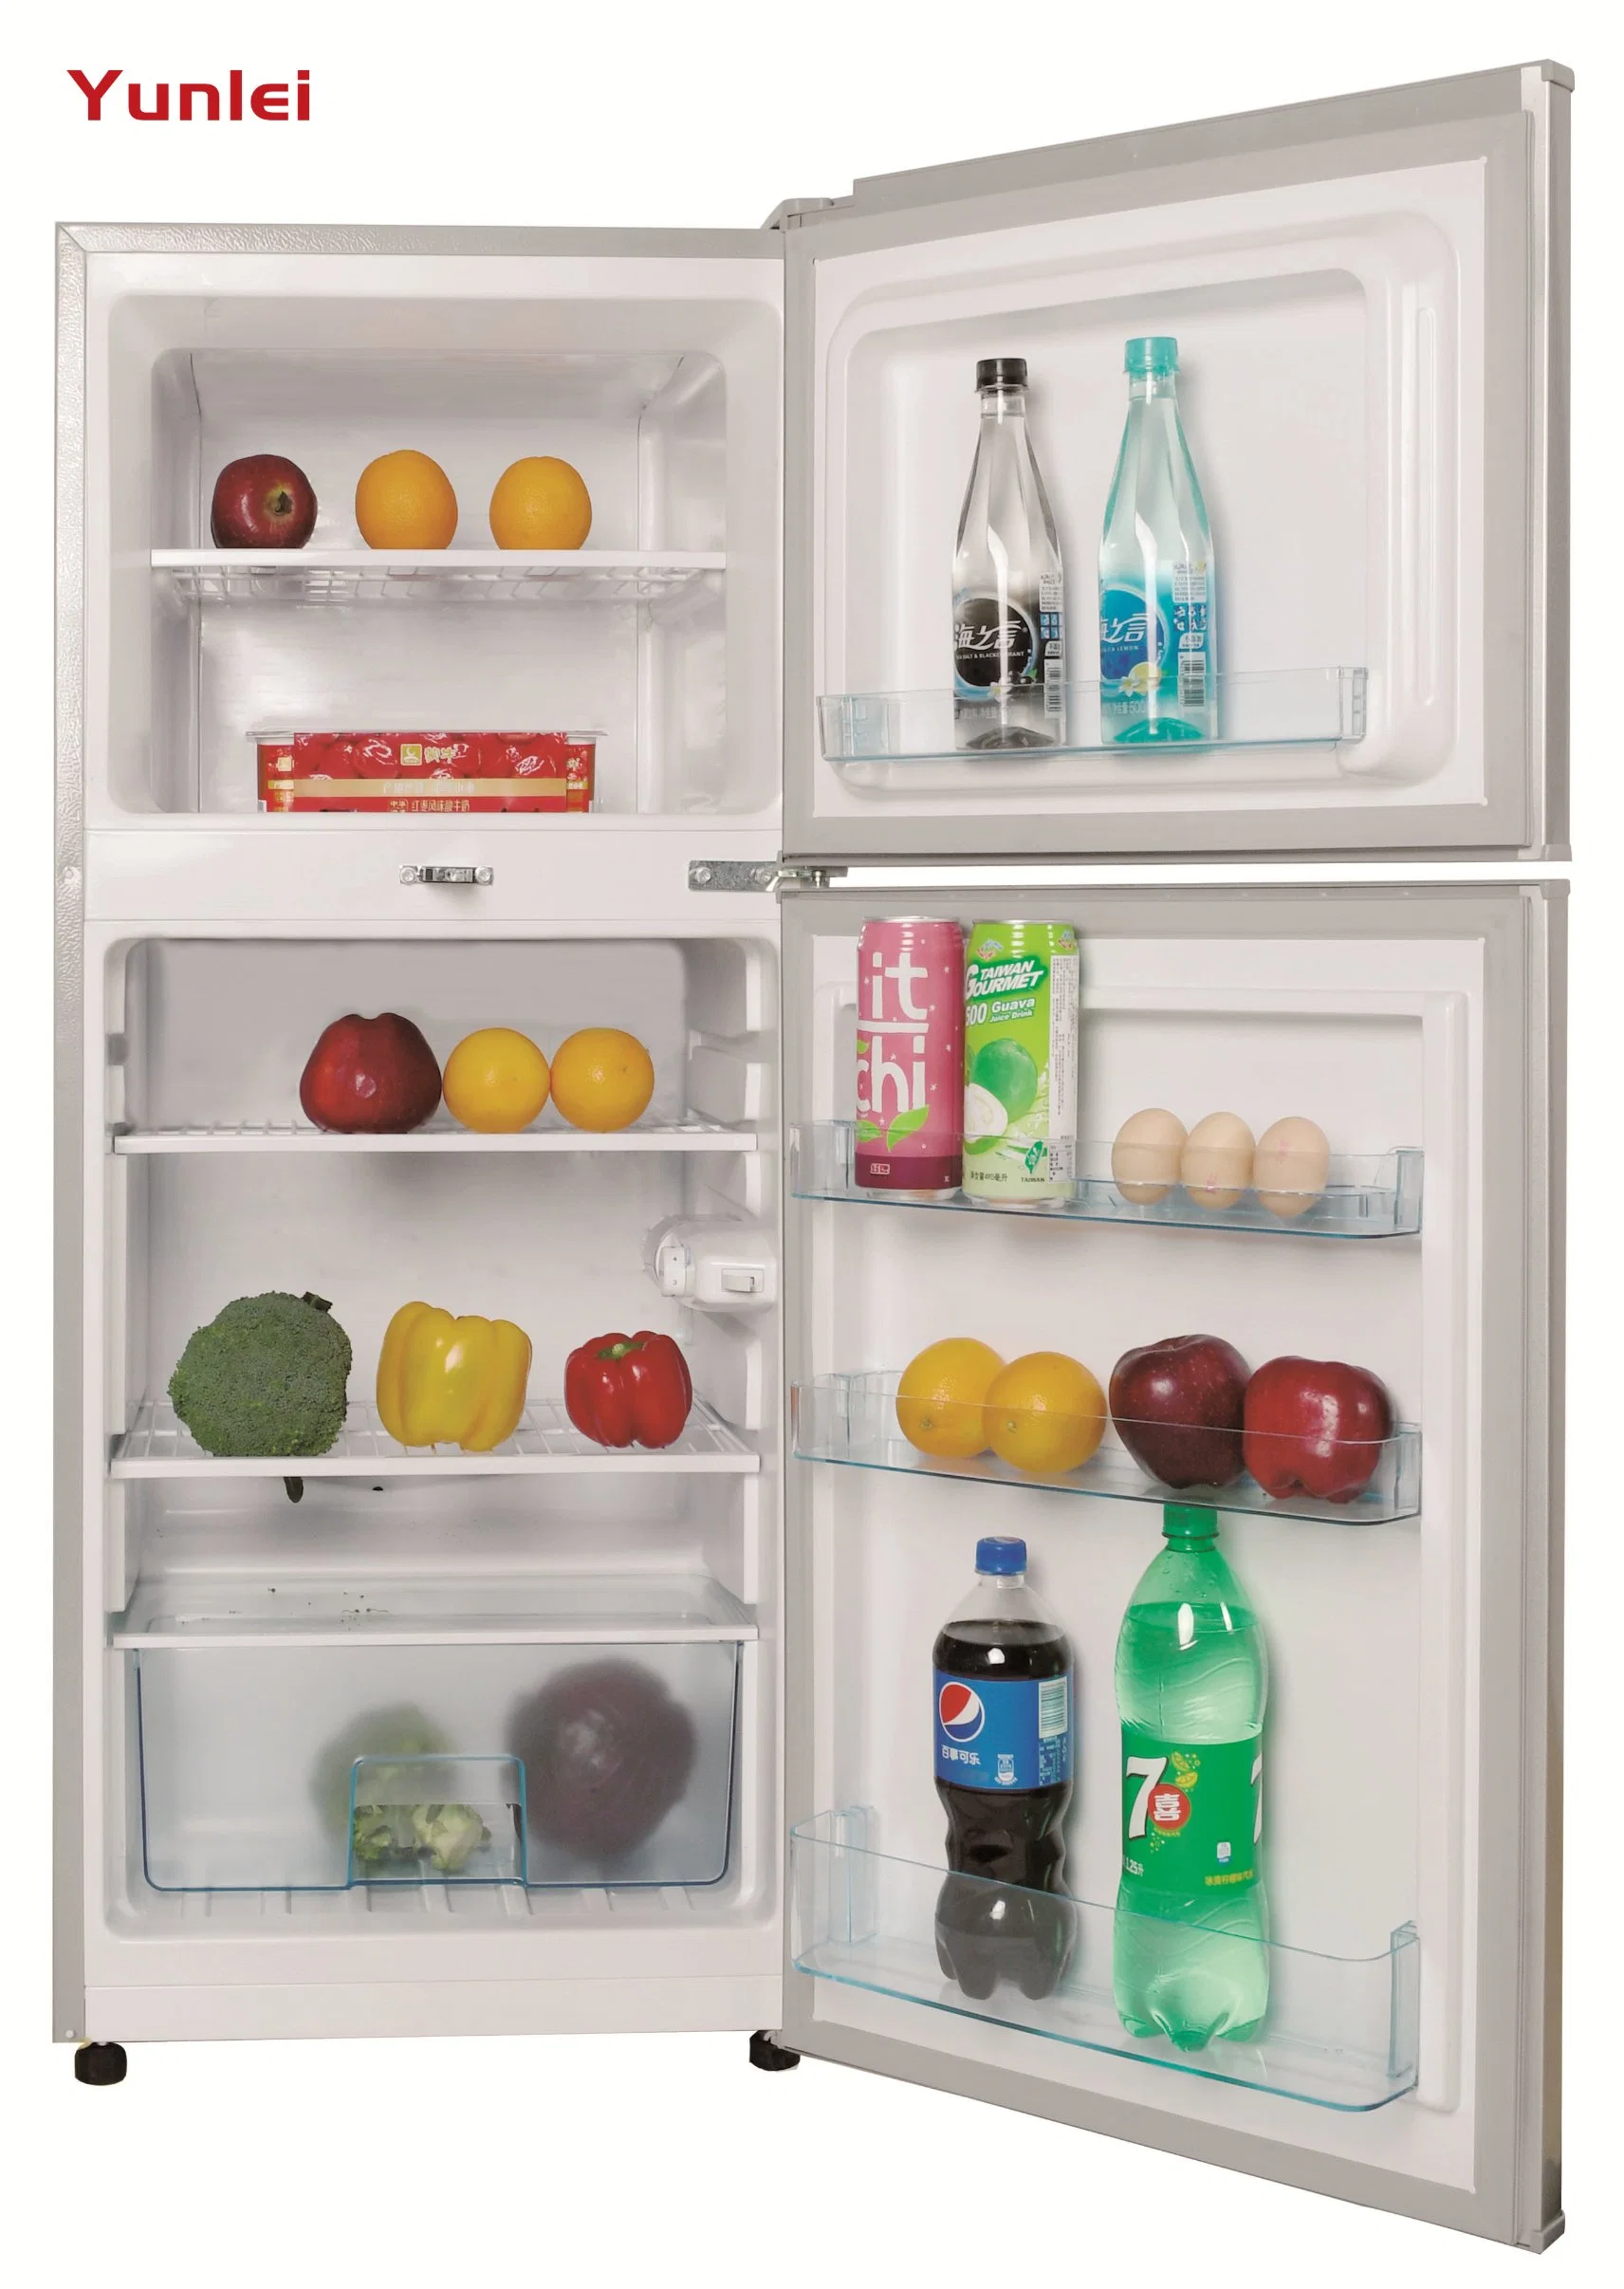 يونلي - باب مزدوج يبرد الثلاجة المنزلية بالفريزر العلوي الأعلى الأكثر مبيعًا